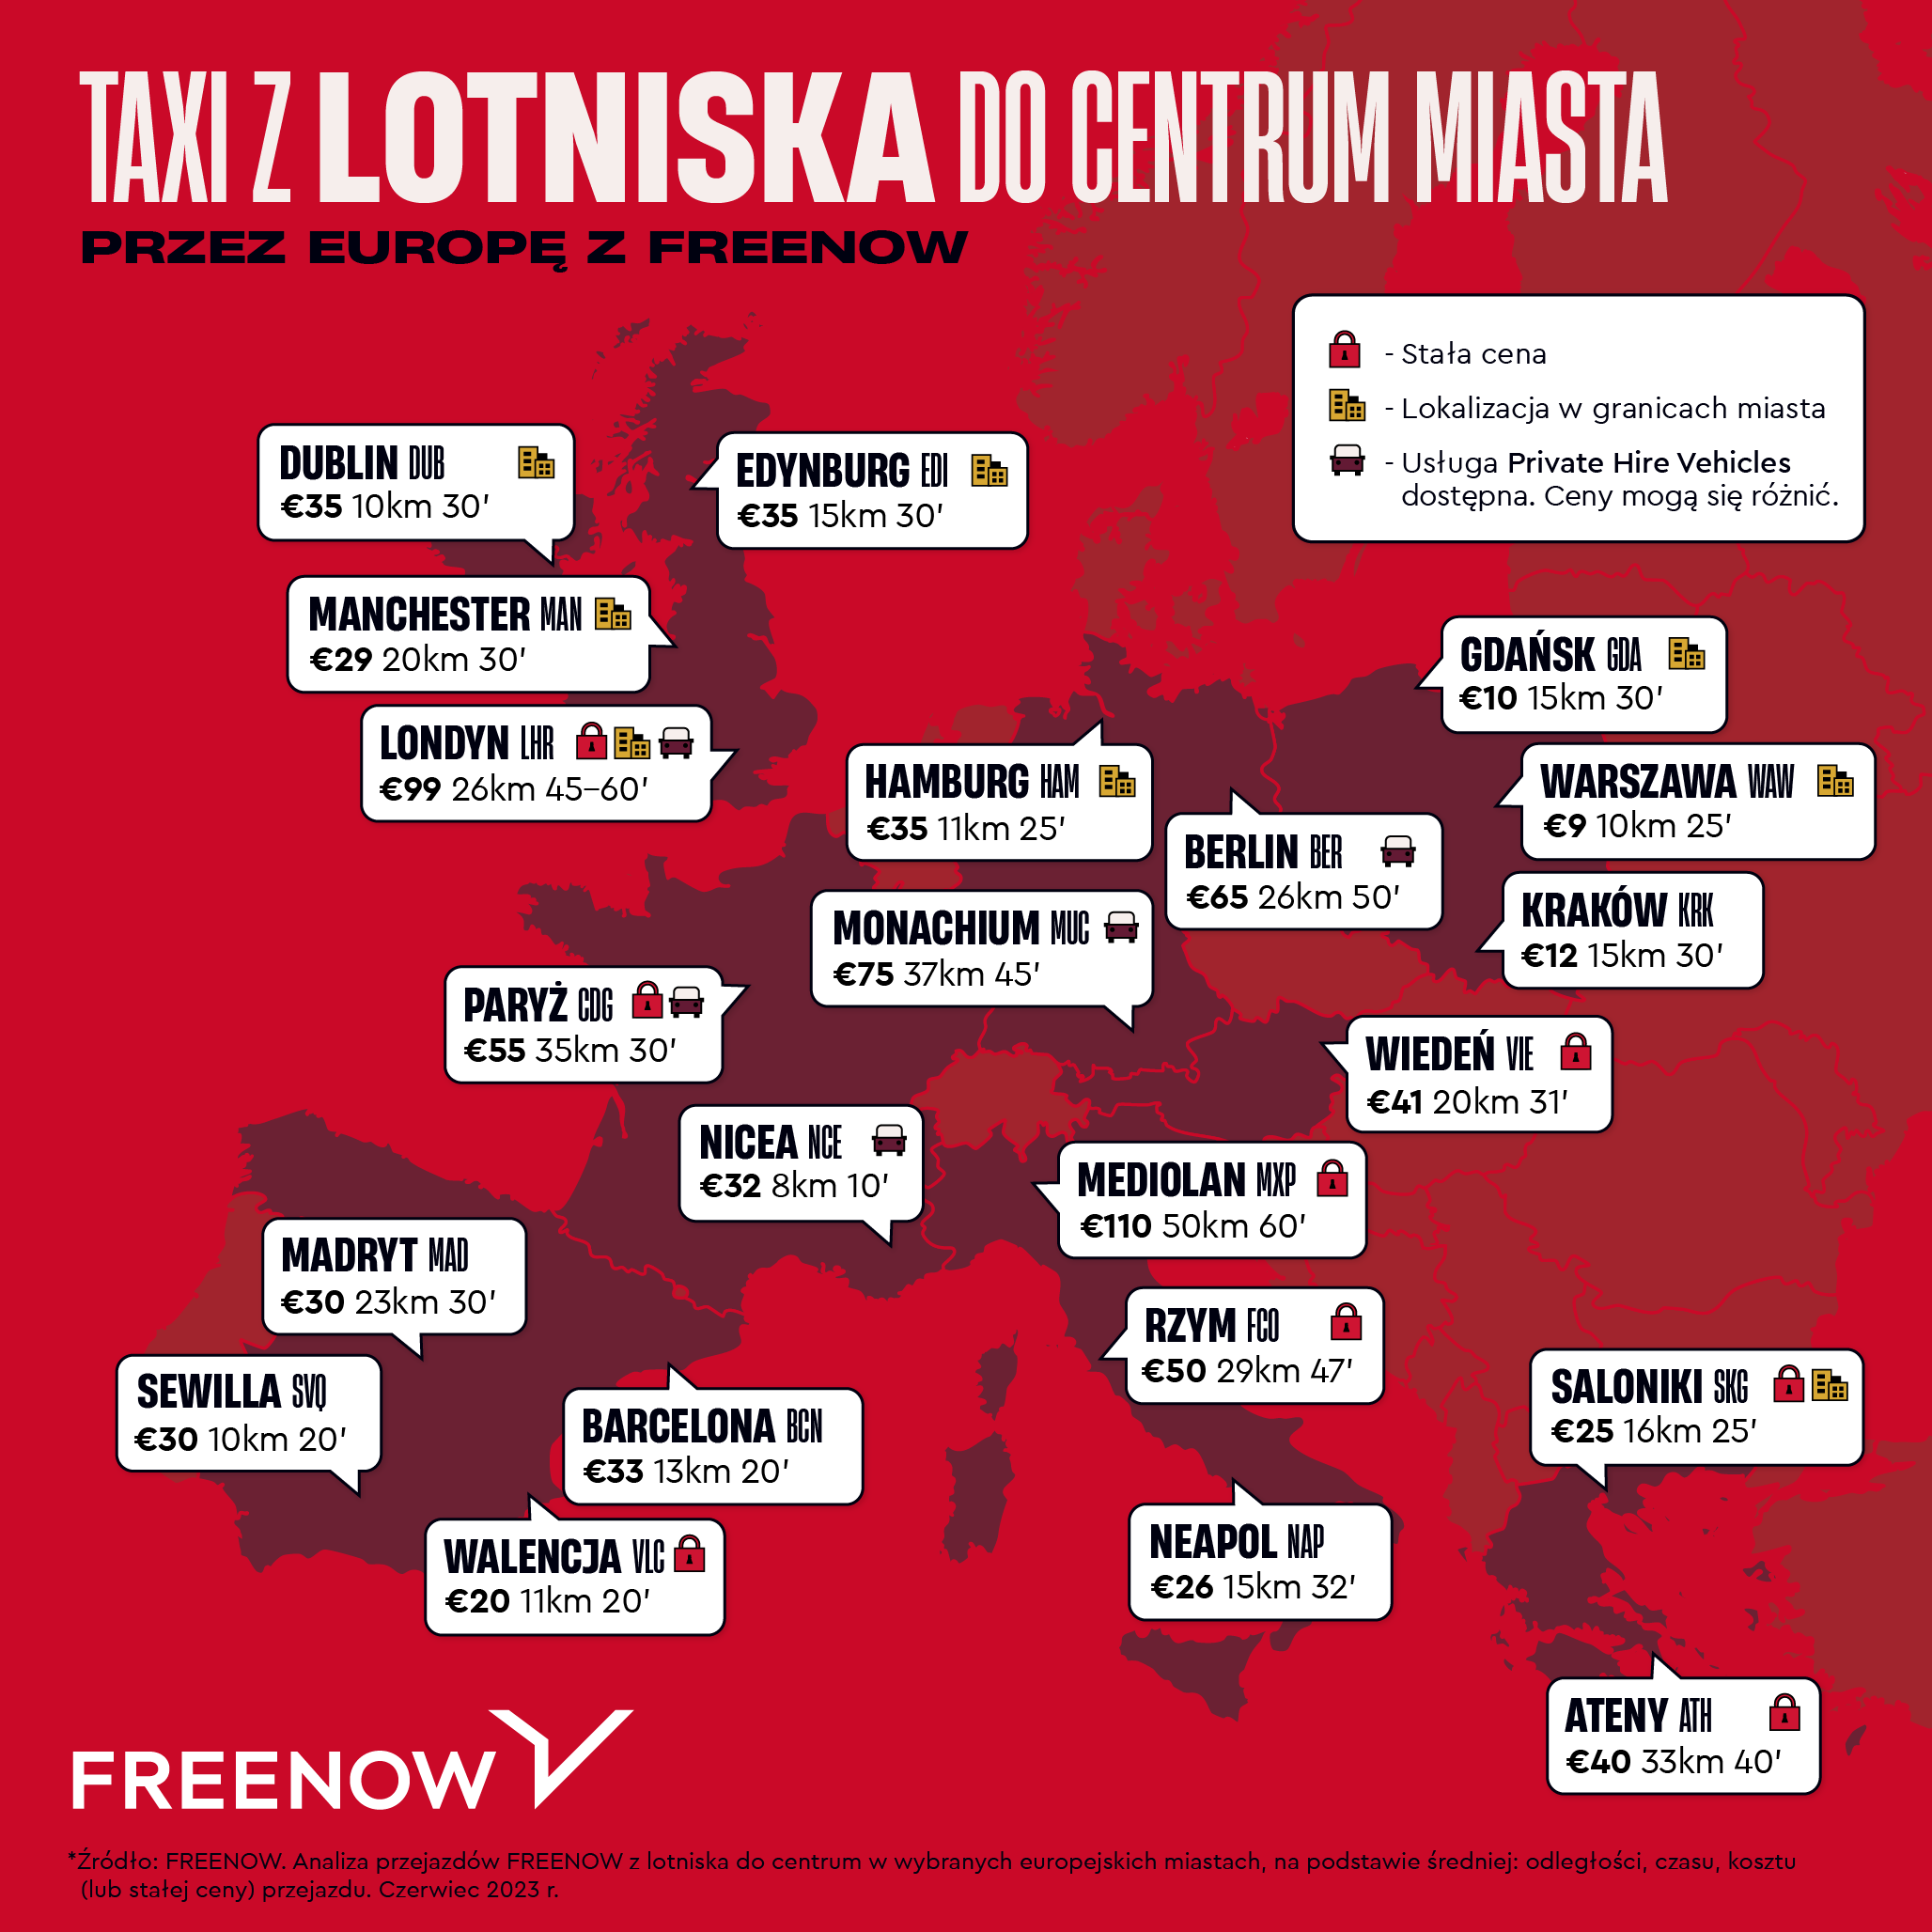 Taxi_z_lotniska_materiaÅ_prasowy.png